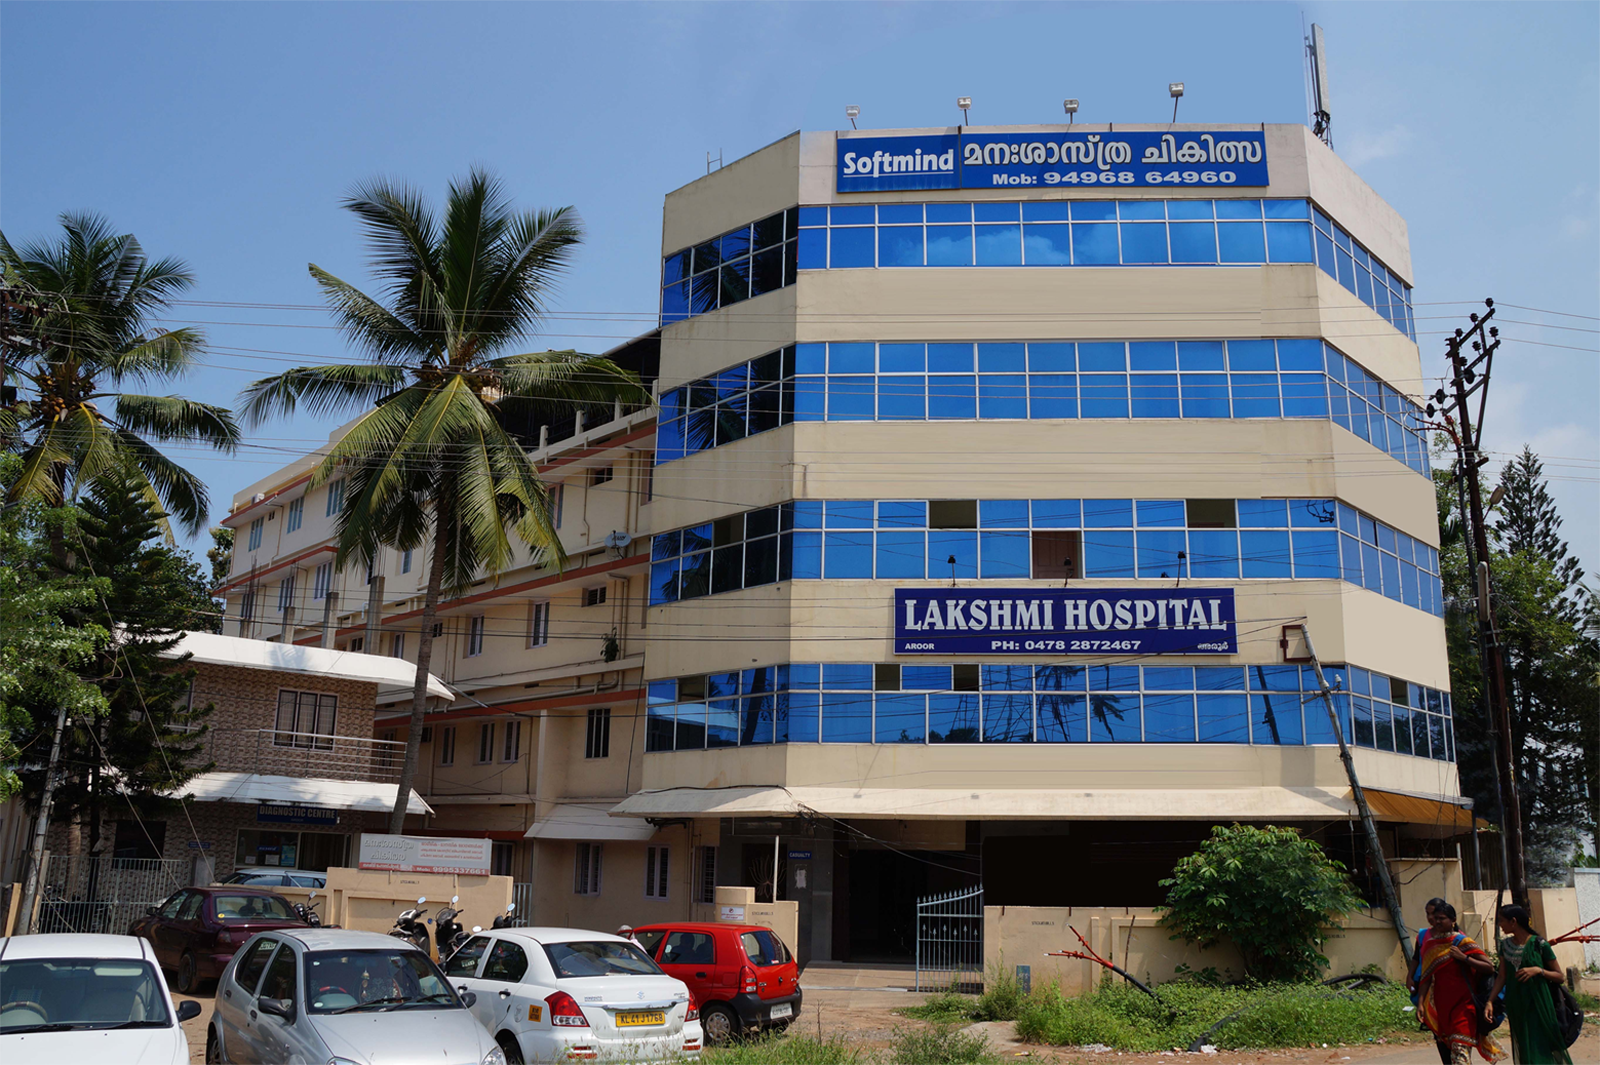 Lakshmi Hospital Image